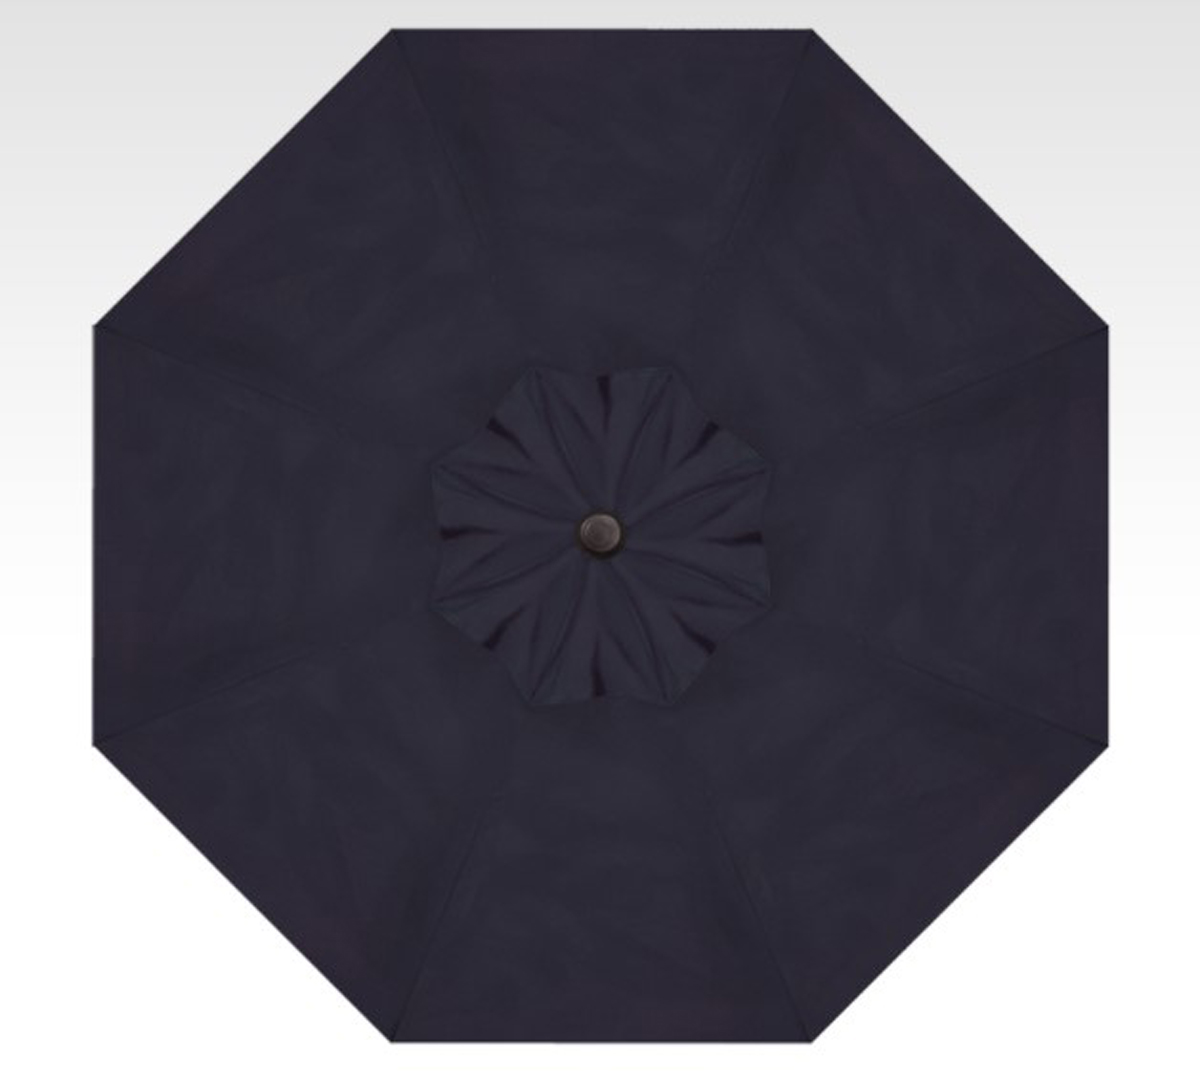 9′ starlux navy lighted collar-tilt umbrella – black frame thumbnail image